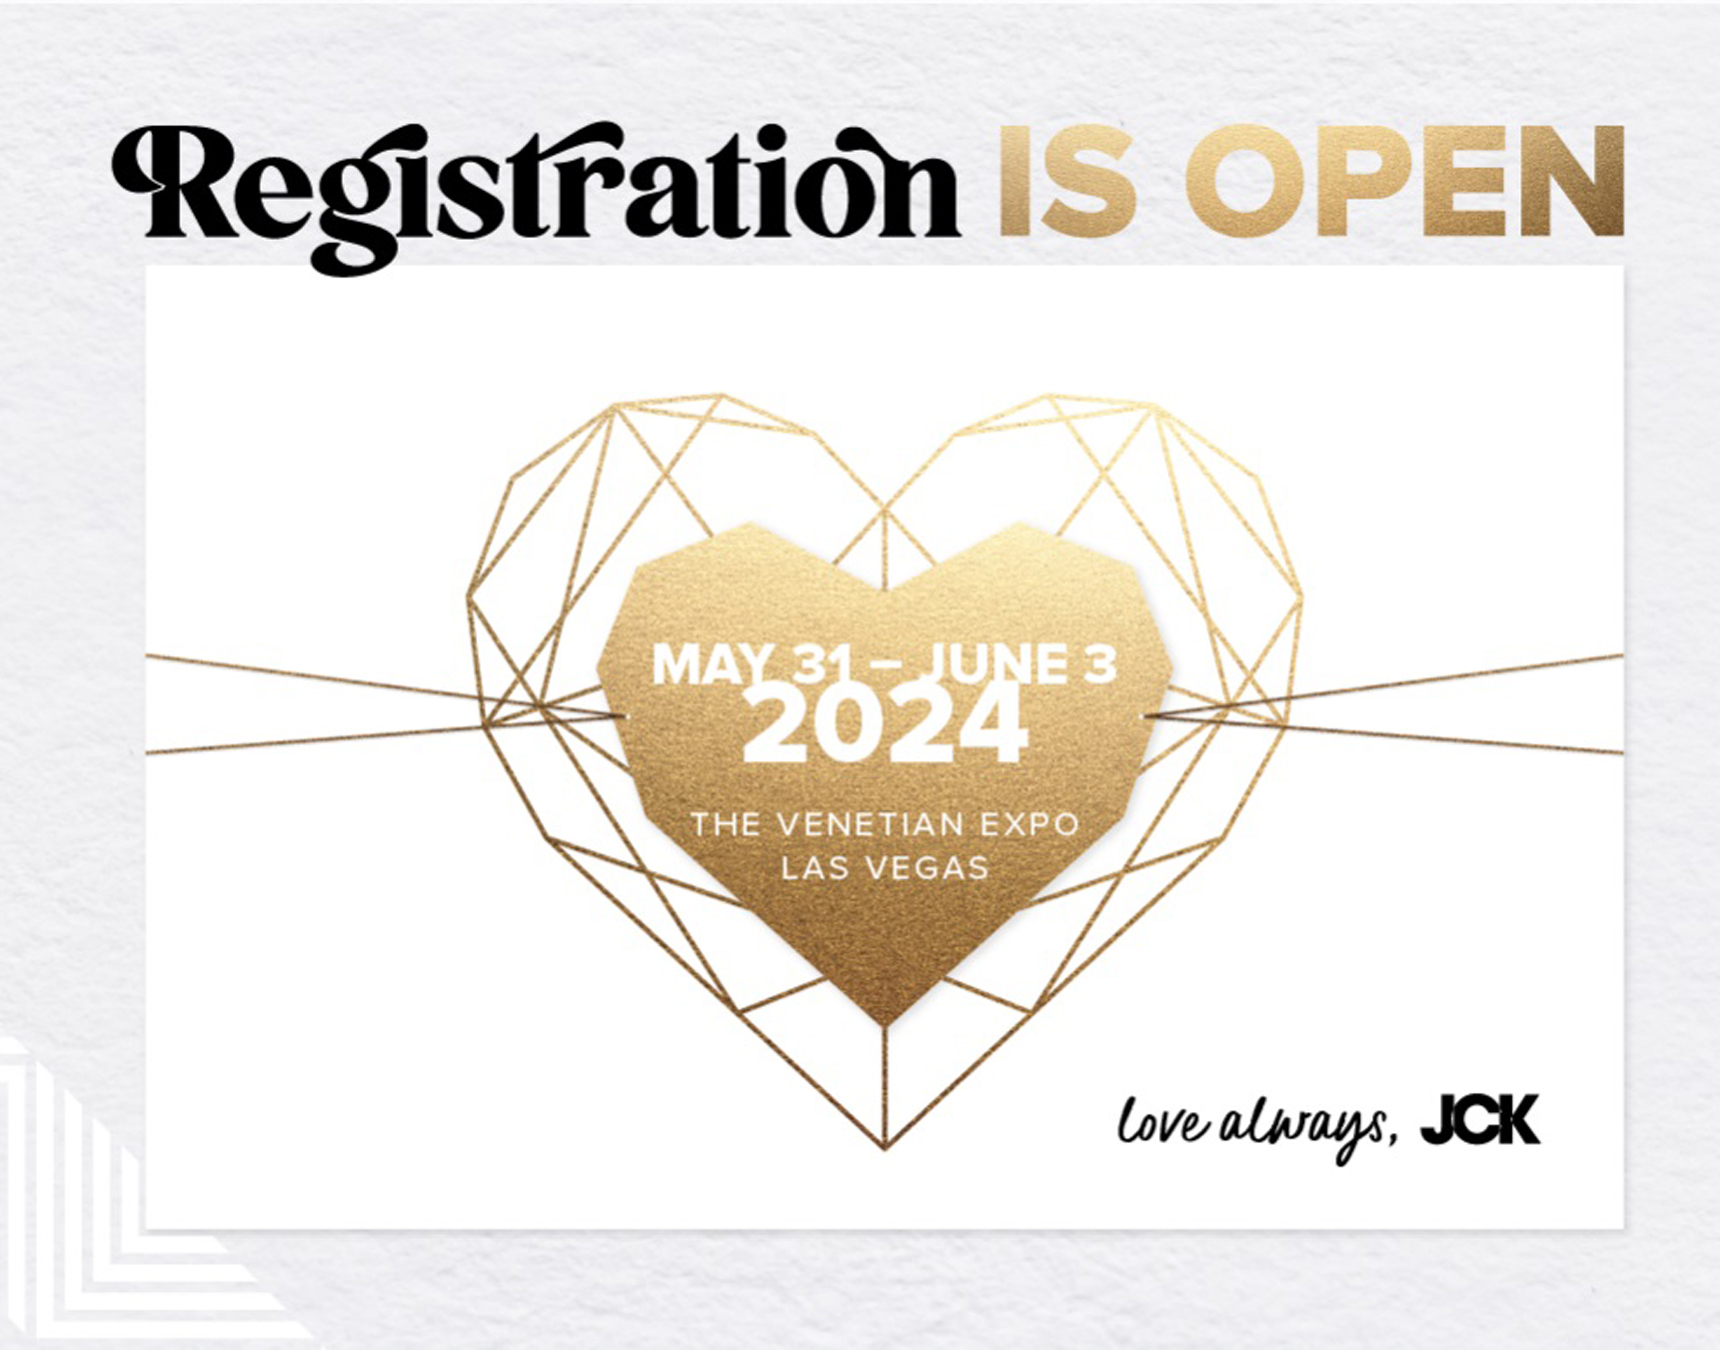 Registration opens for JCK 2024 in Las Vegas